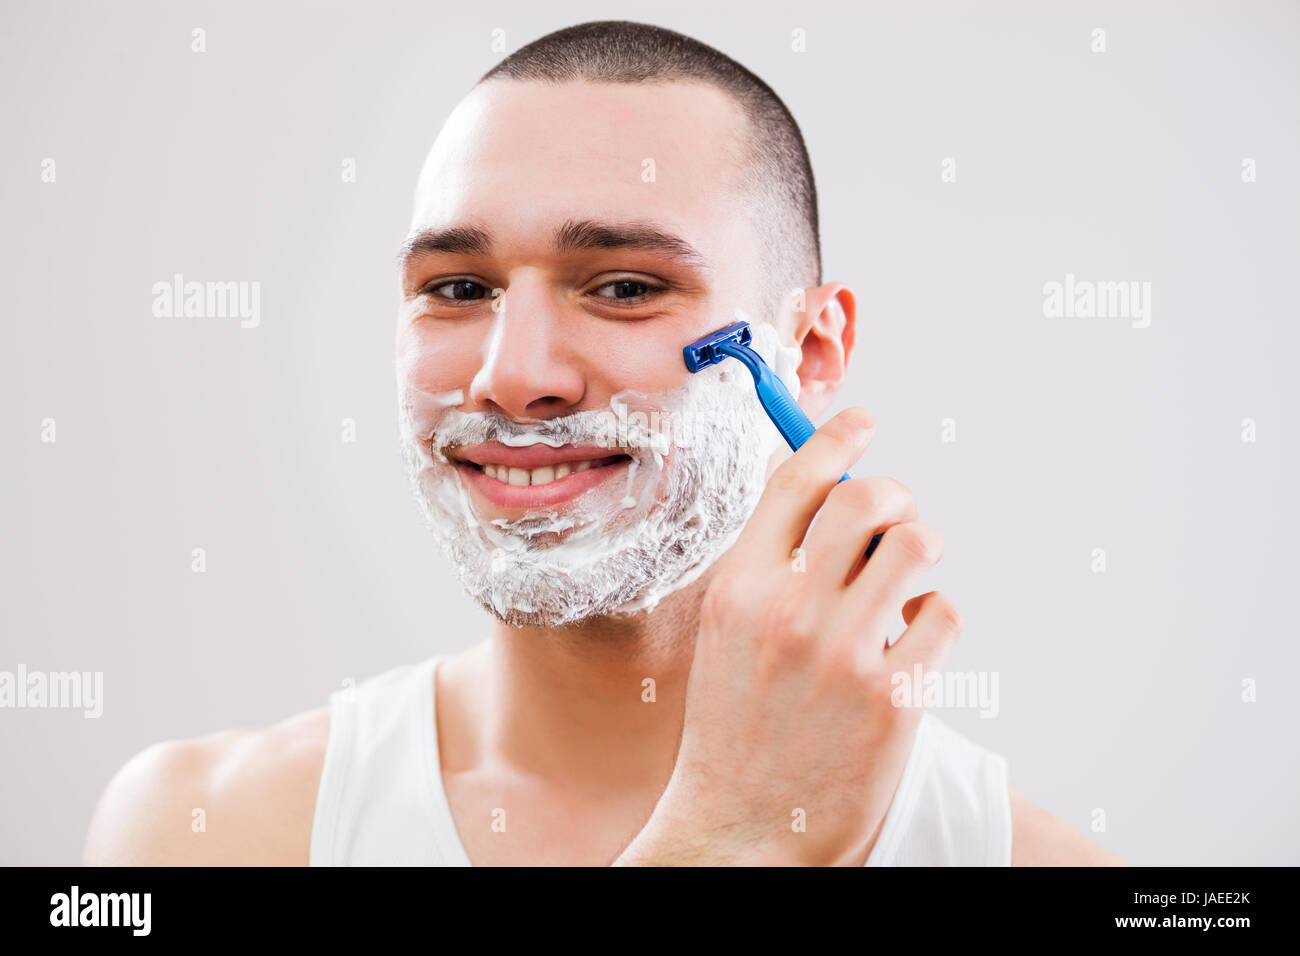 Junger Mann wird seinen Bart rasieren. Stockfoto